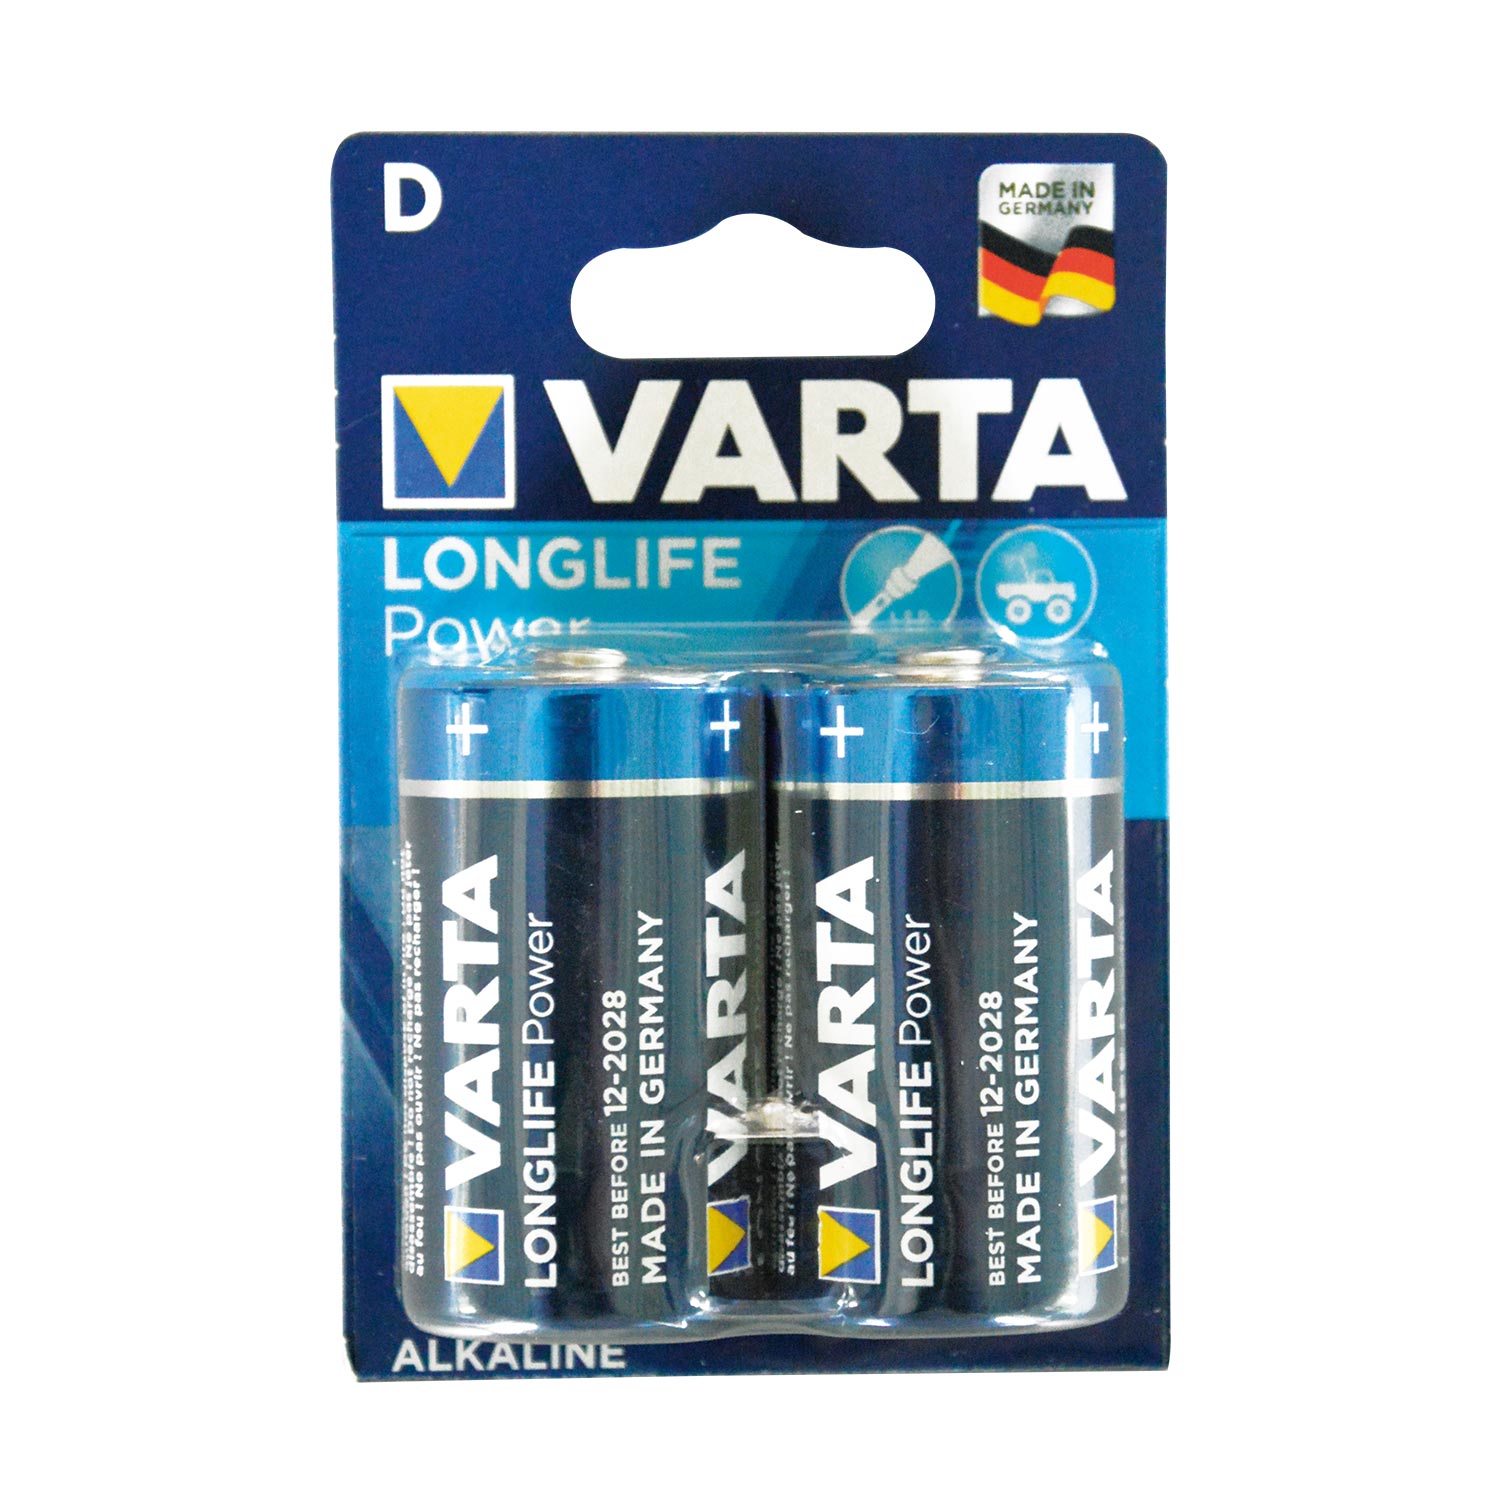 Varta LongLife Power 4920 Batterien LR20 D Mono 1,5V 2er